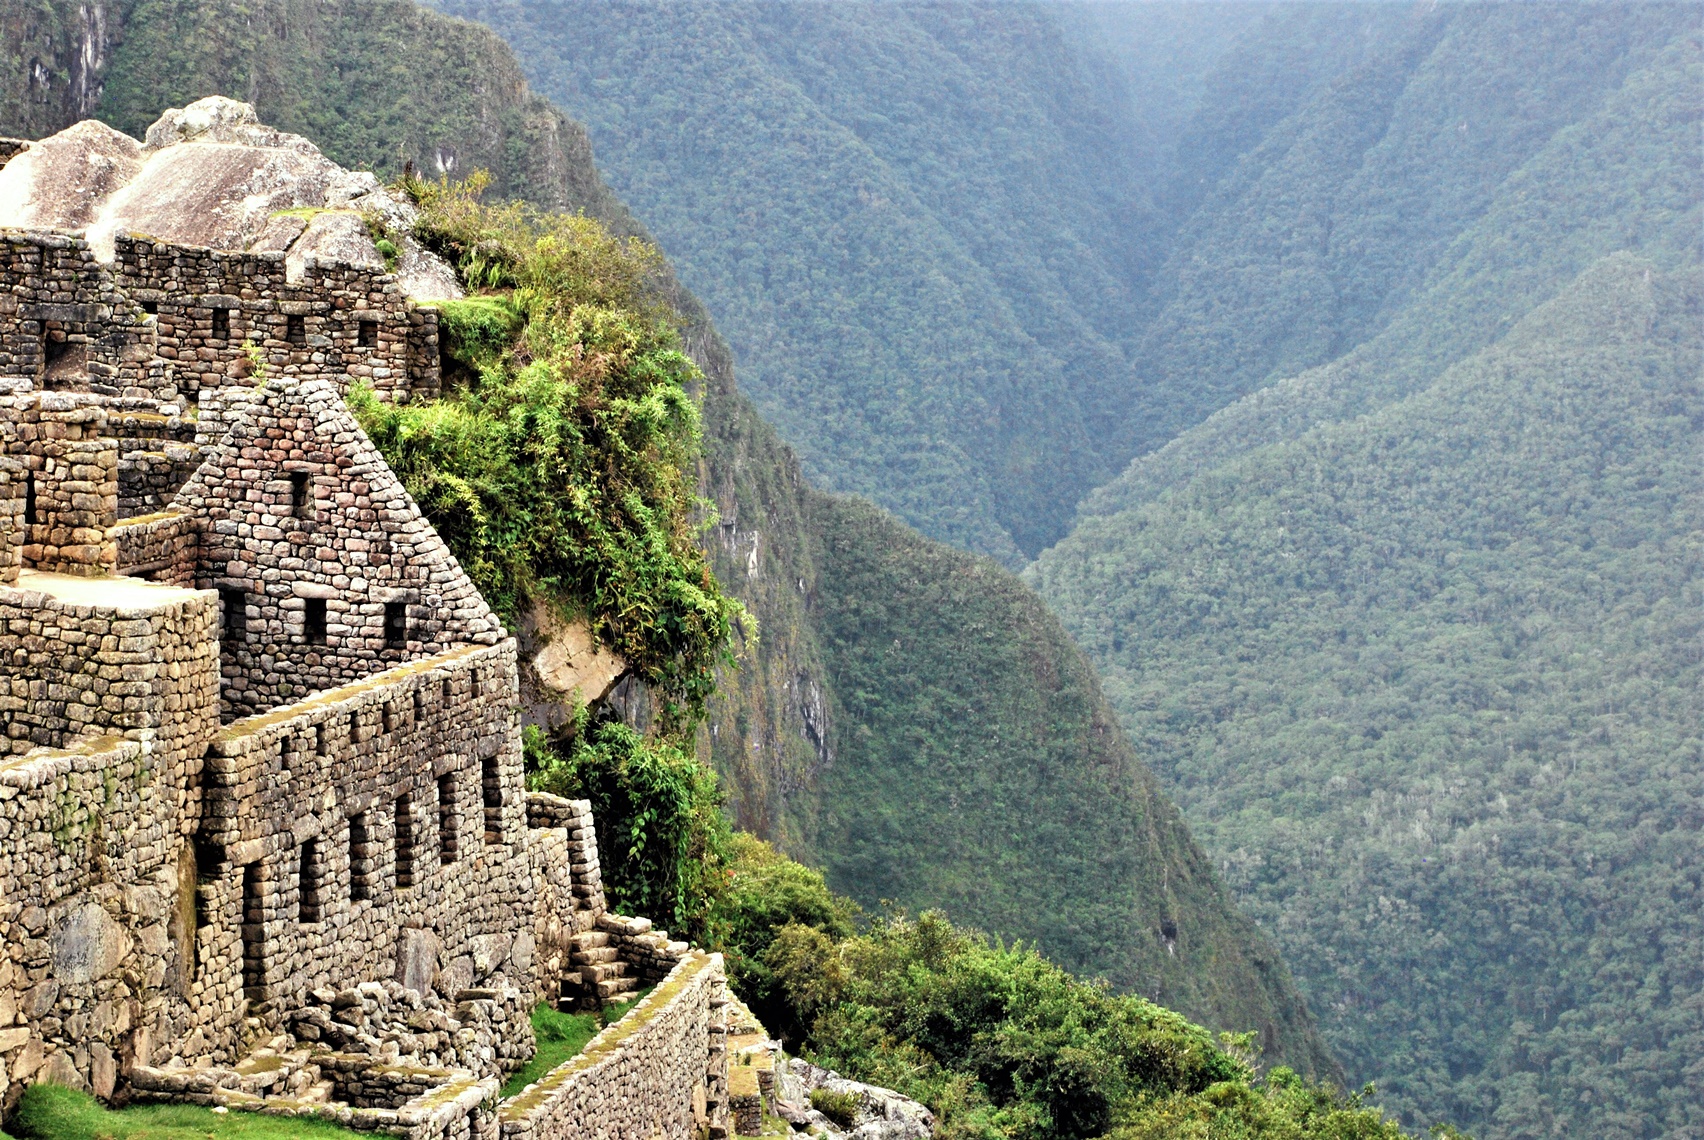 Inca ruins in Peru